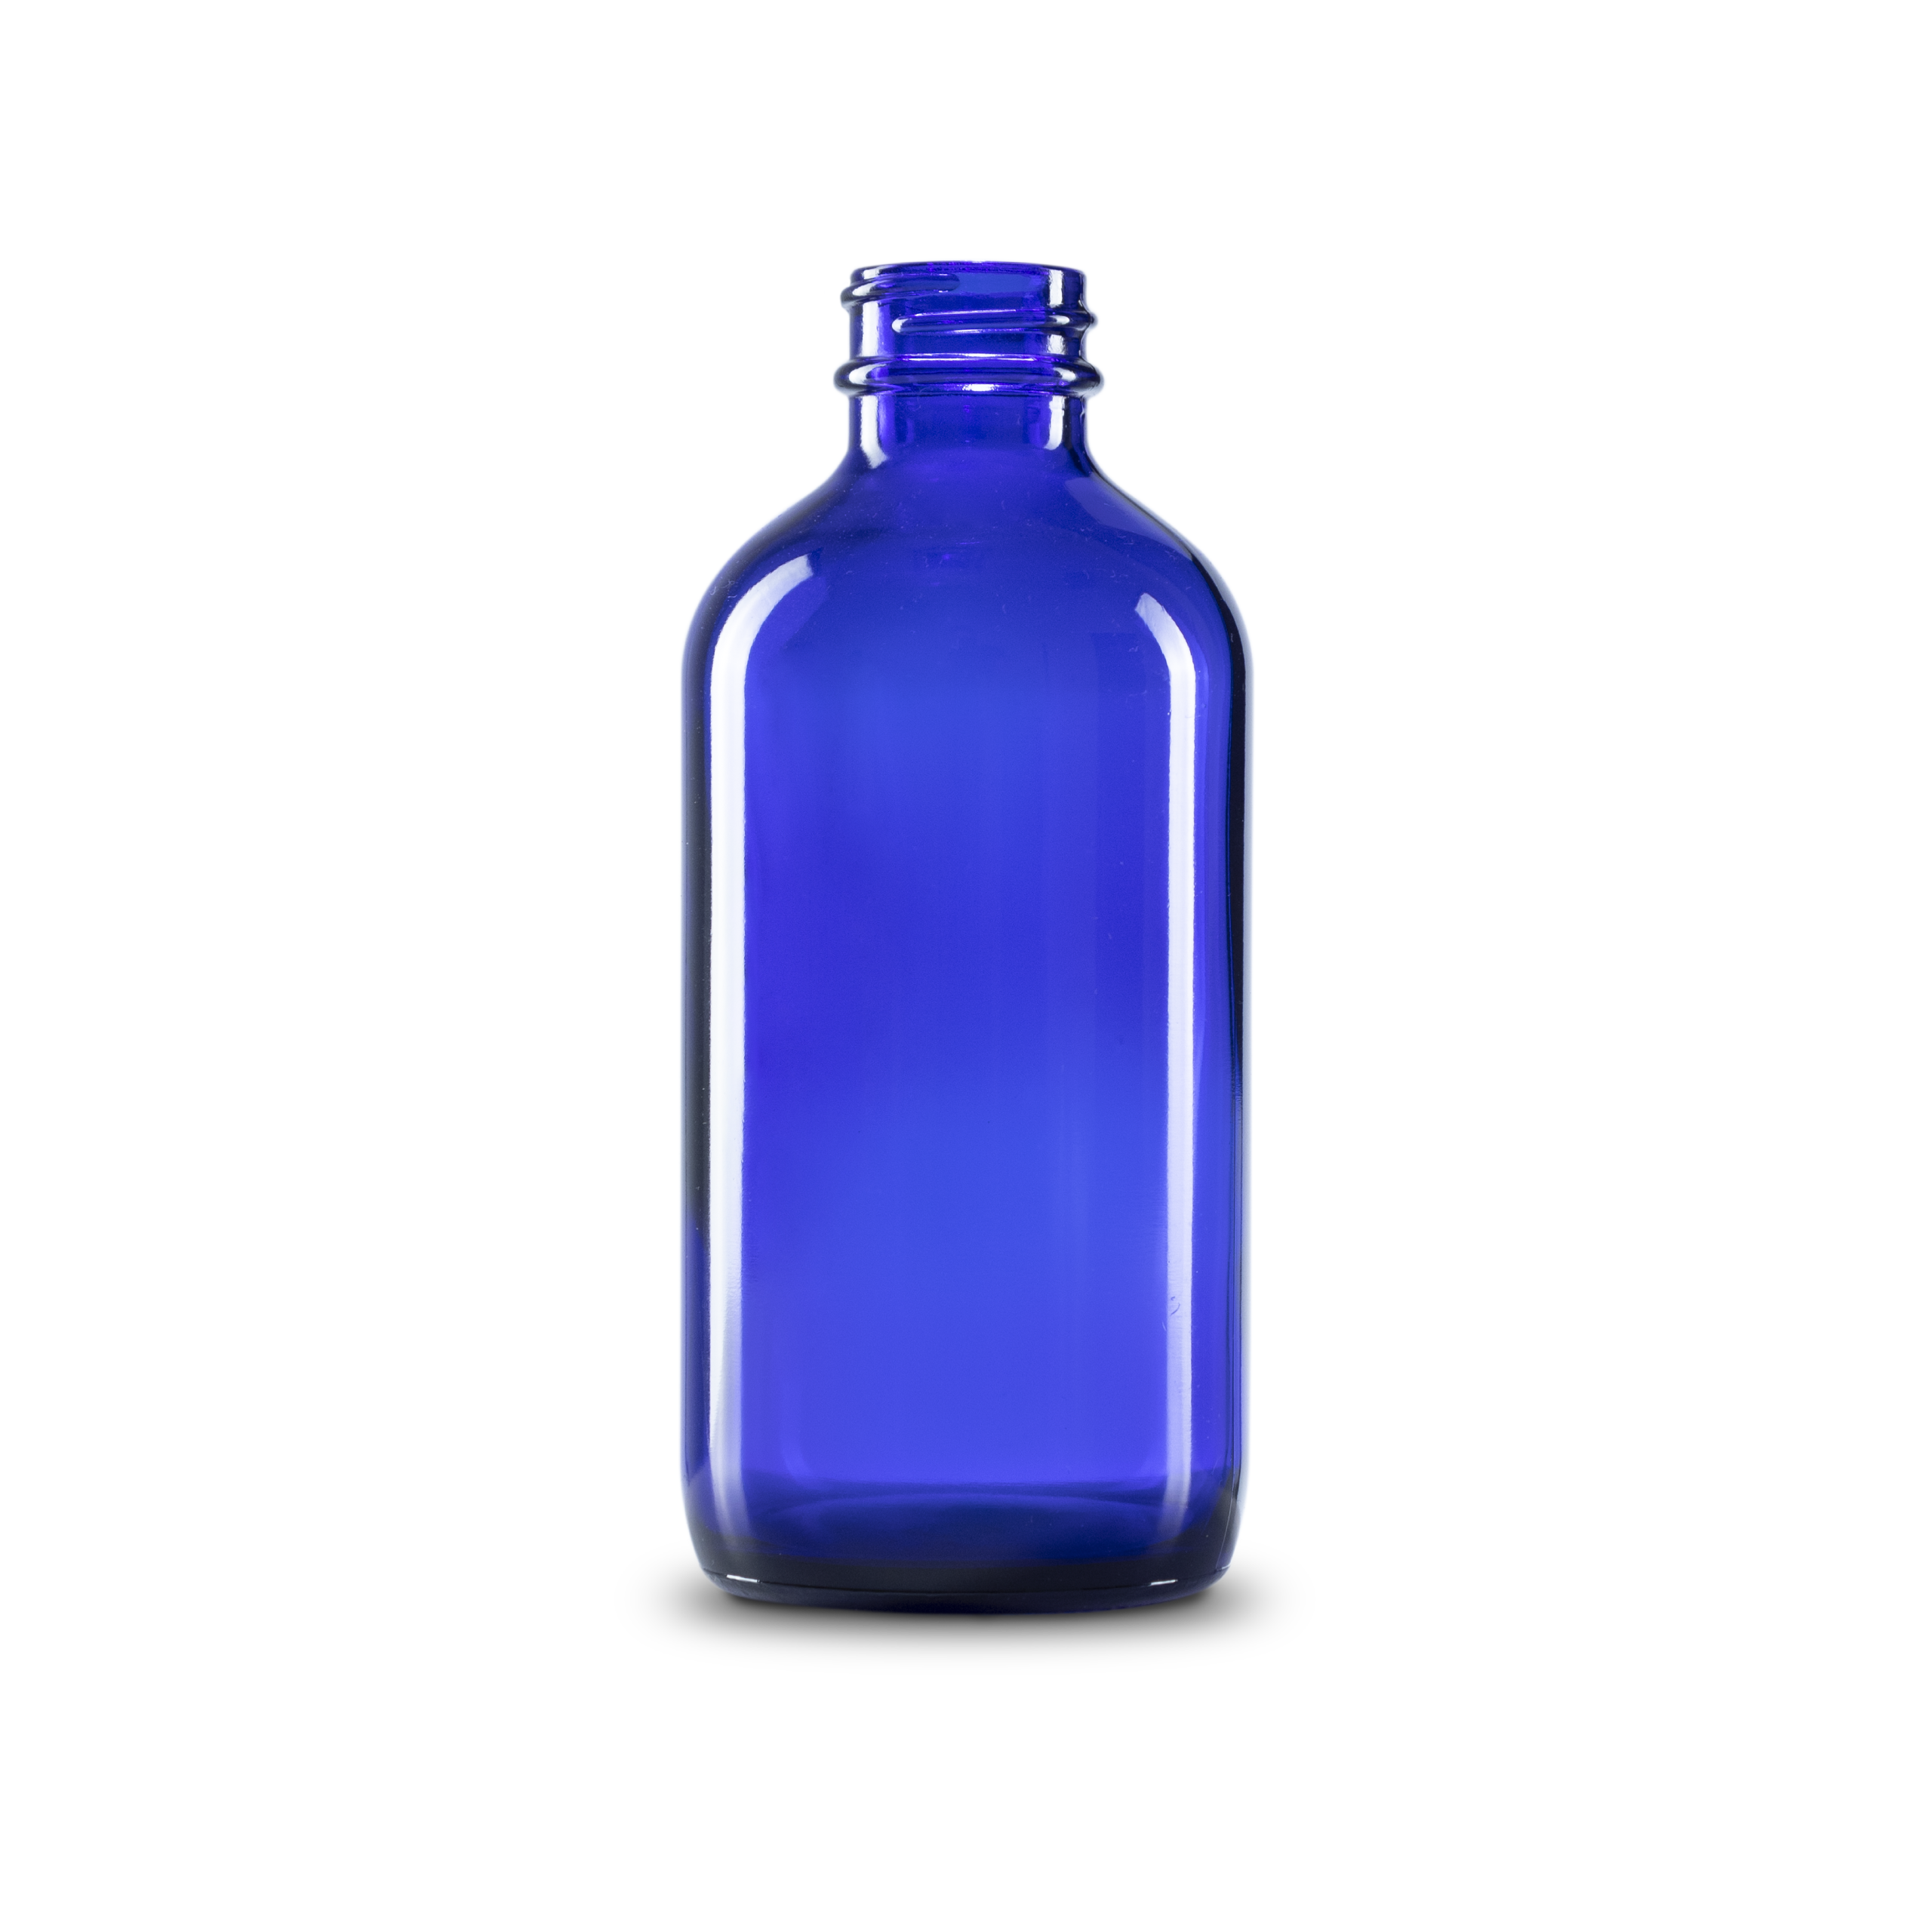 8 oz Blue Glass Boston Round Bottle 28-400 Neck Finish